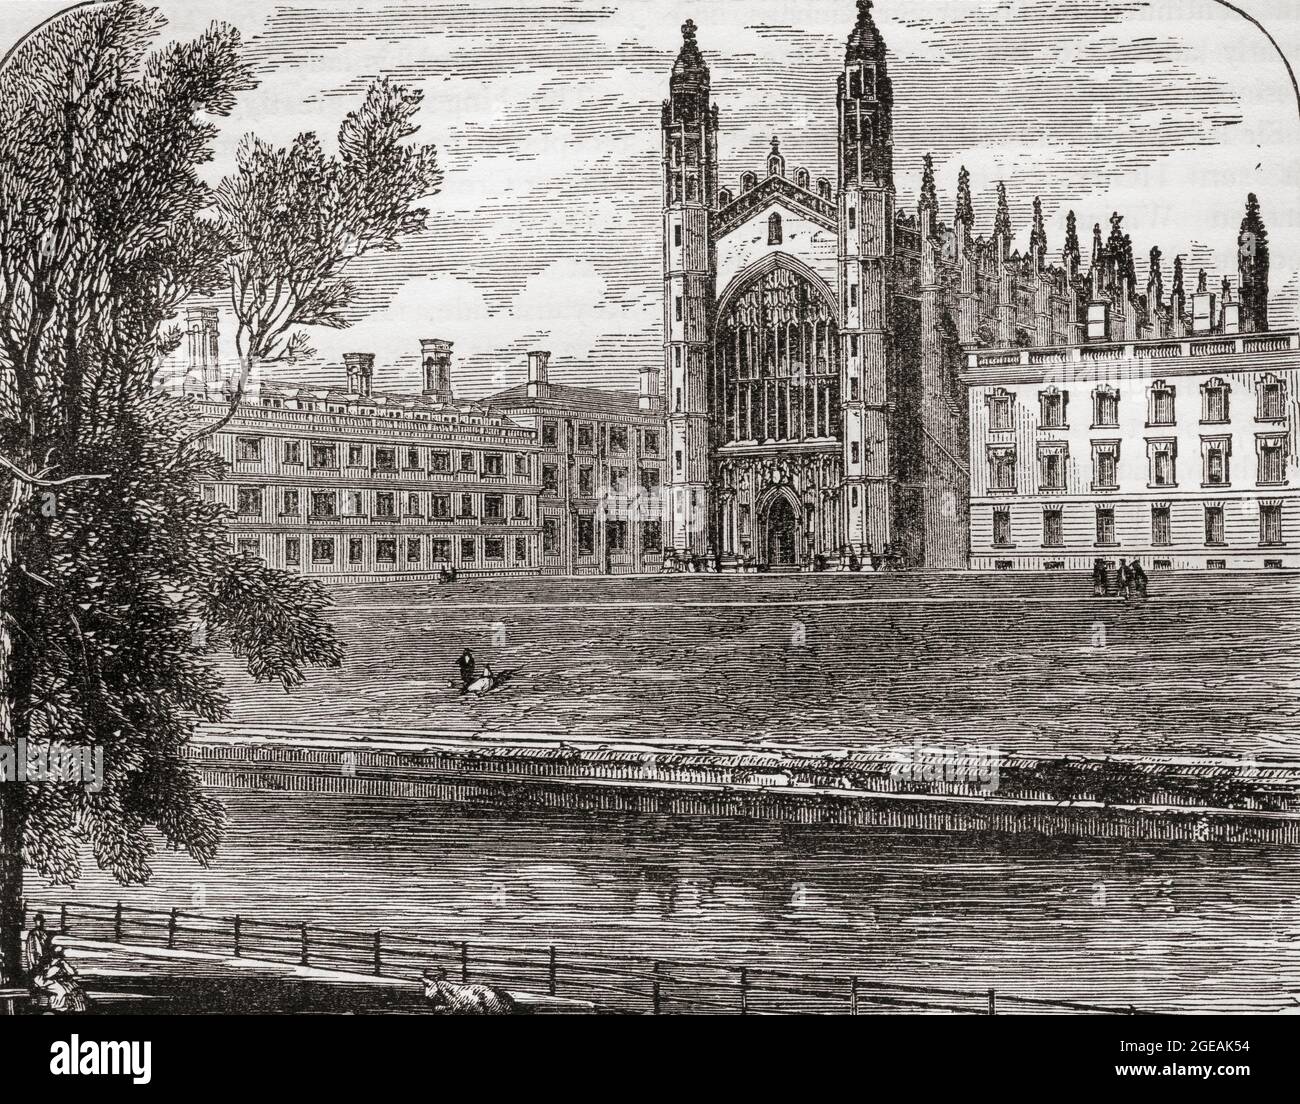 Chapelle du King's College, Université de Cambridge, Cambridge, Angleterre, vue ici au XIXe siècle. De la pittoresque Angleterre, ses monuments et ses Hausts historiques, publié en 1891. Banque D'Images